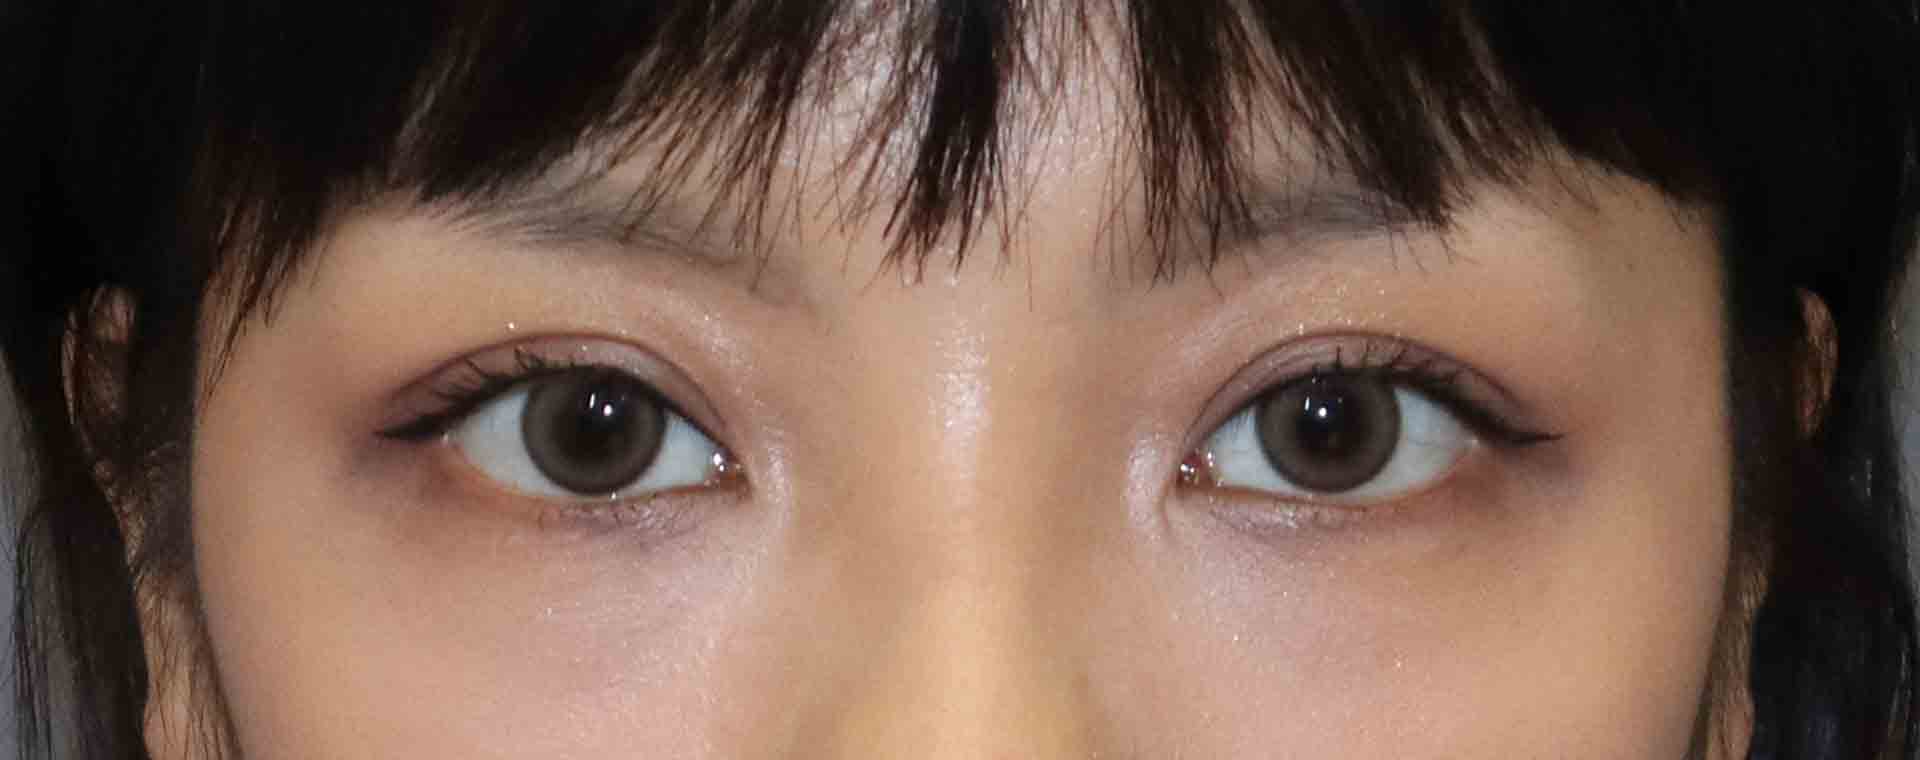 雙眼皮手術推薦醫師-縫雙眼皮後遺症-割雙眼皮恢復期